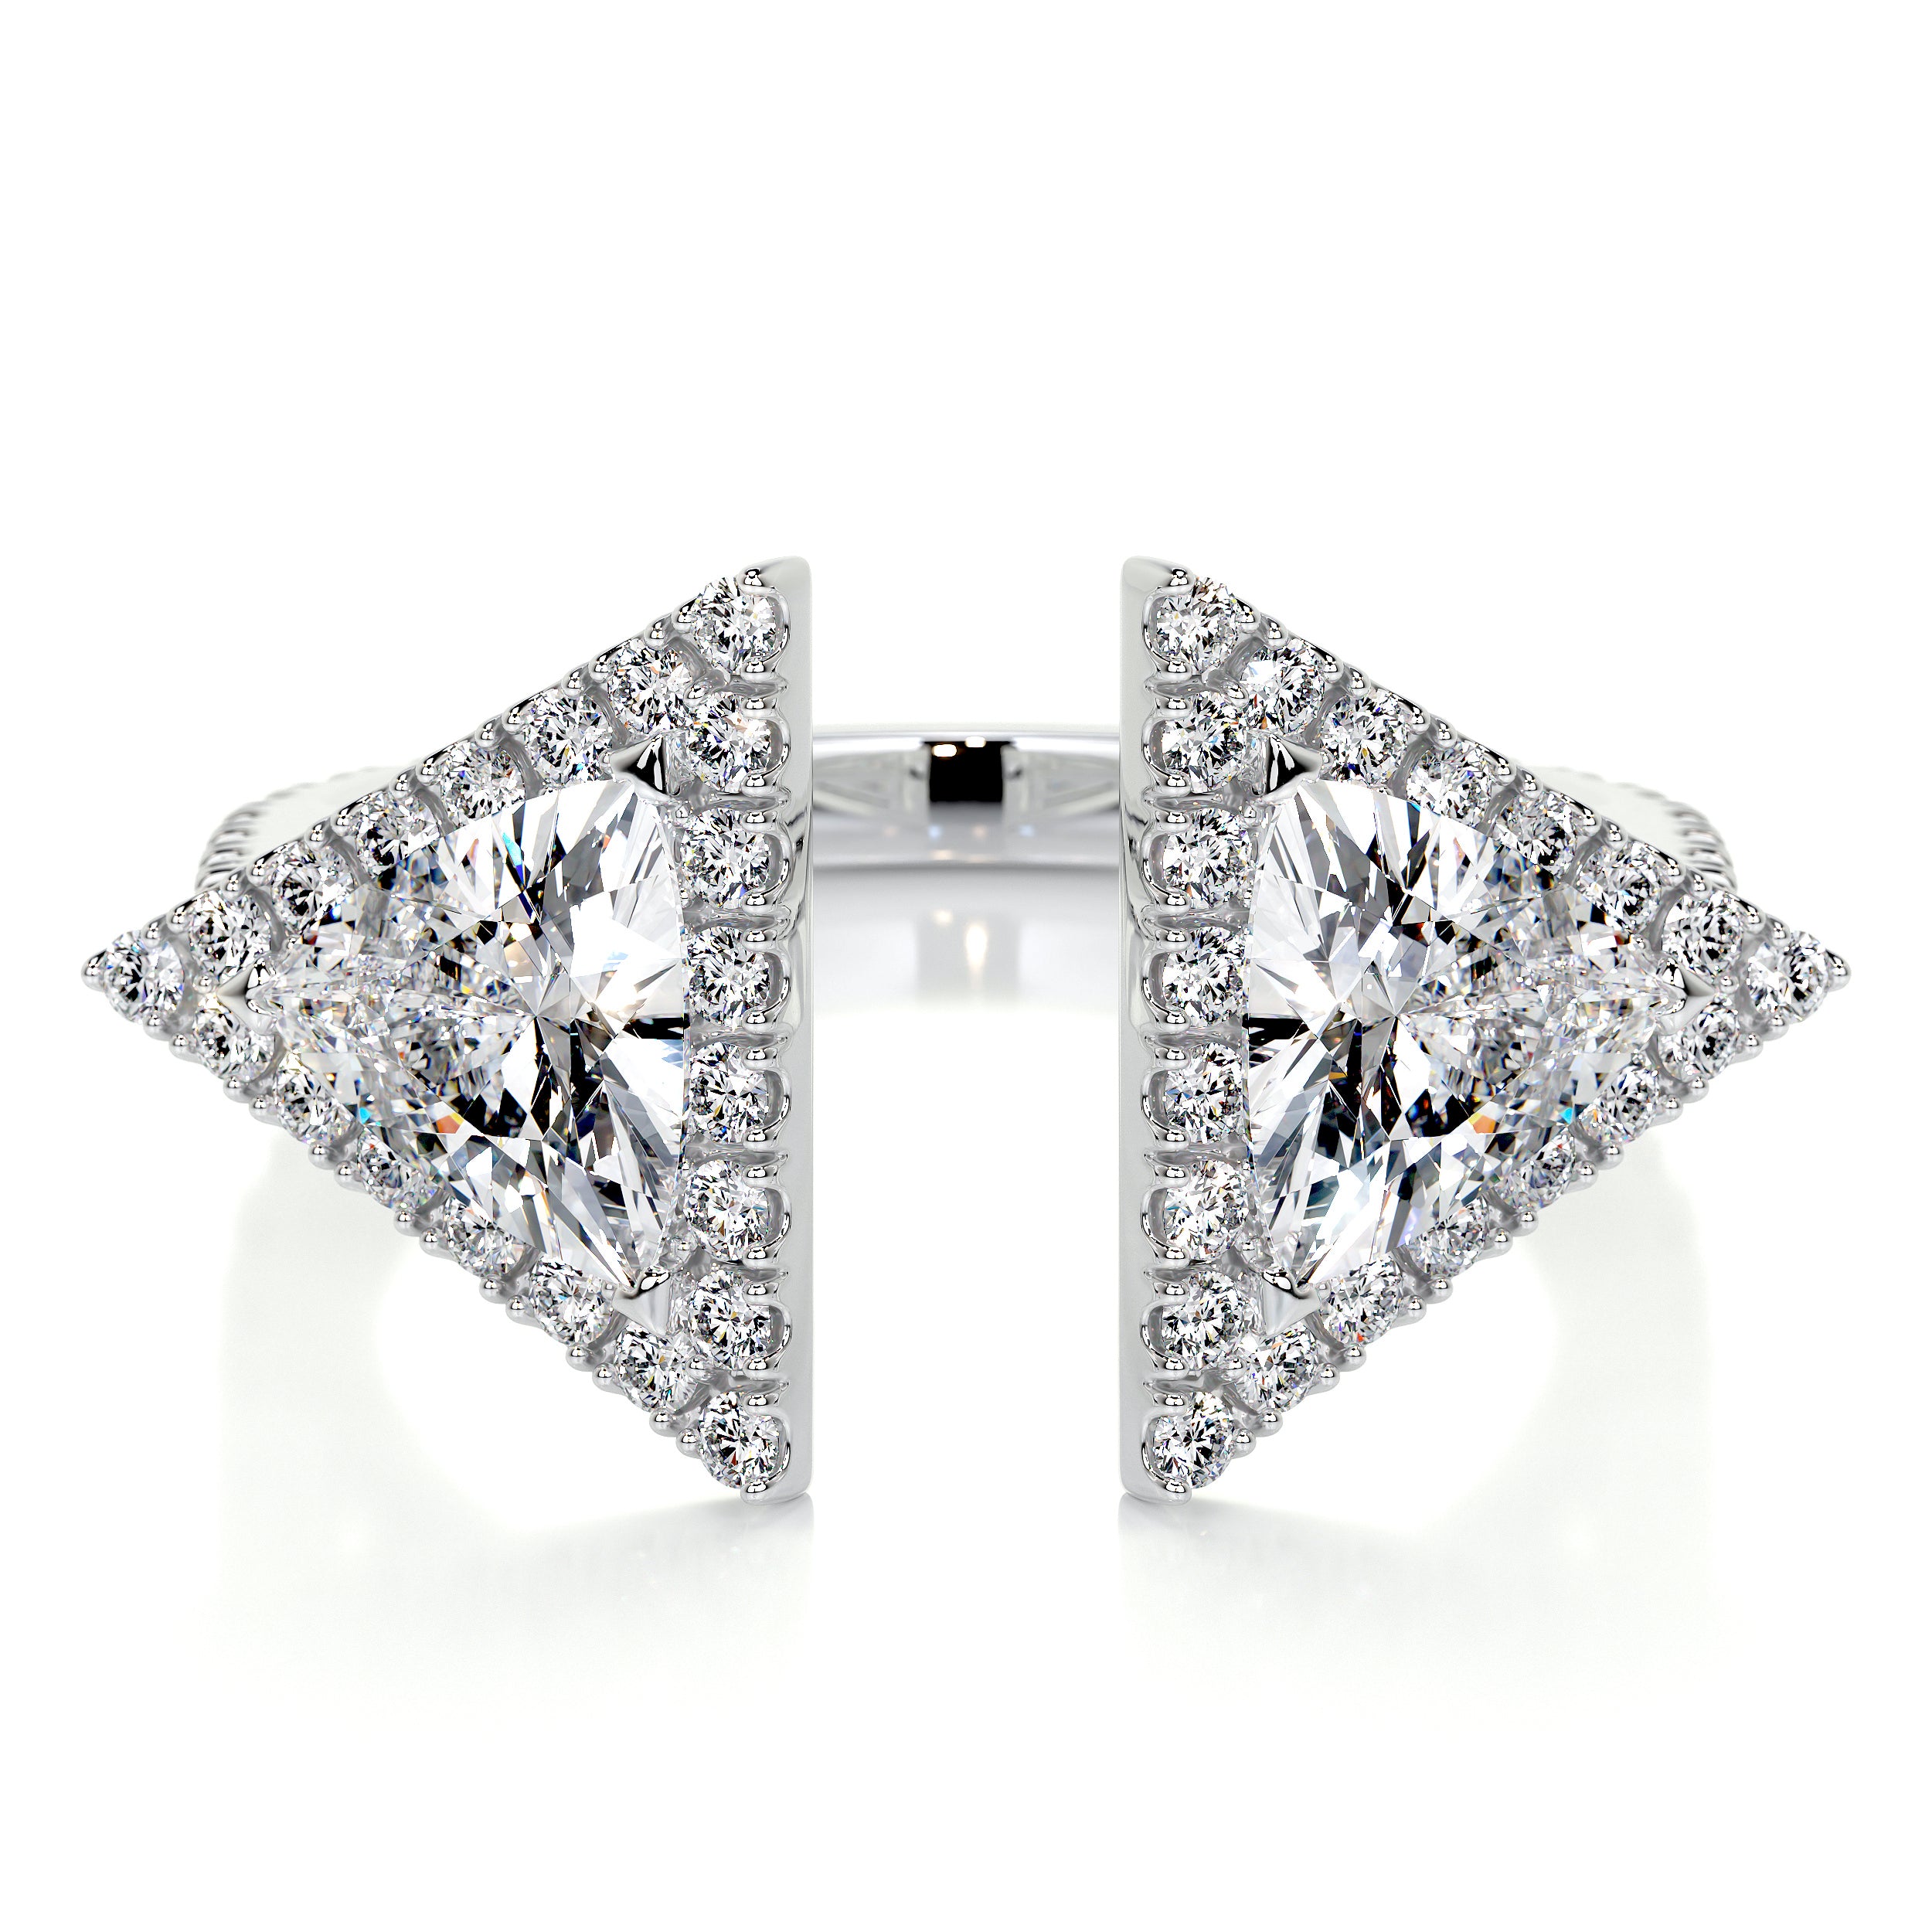 Jade Lab Grown Diamond Wedding Ring   (1.5 carat) -14K White Gold